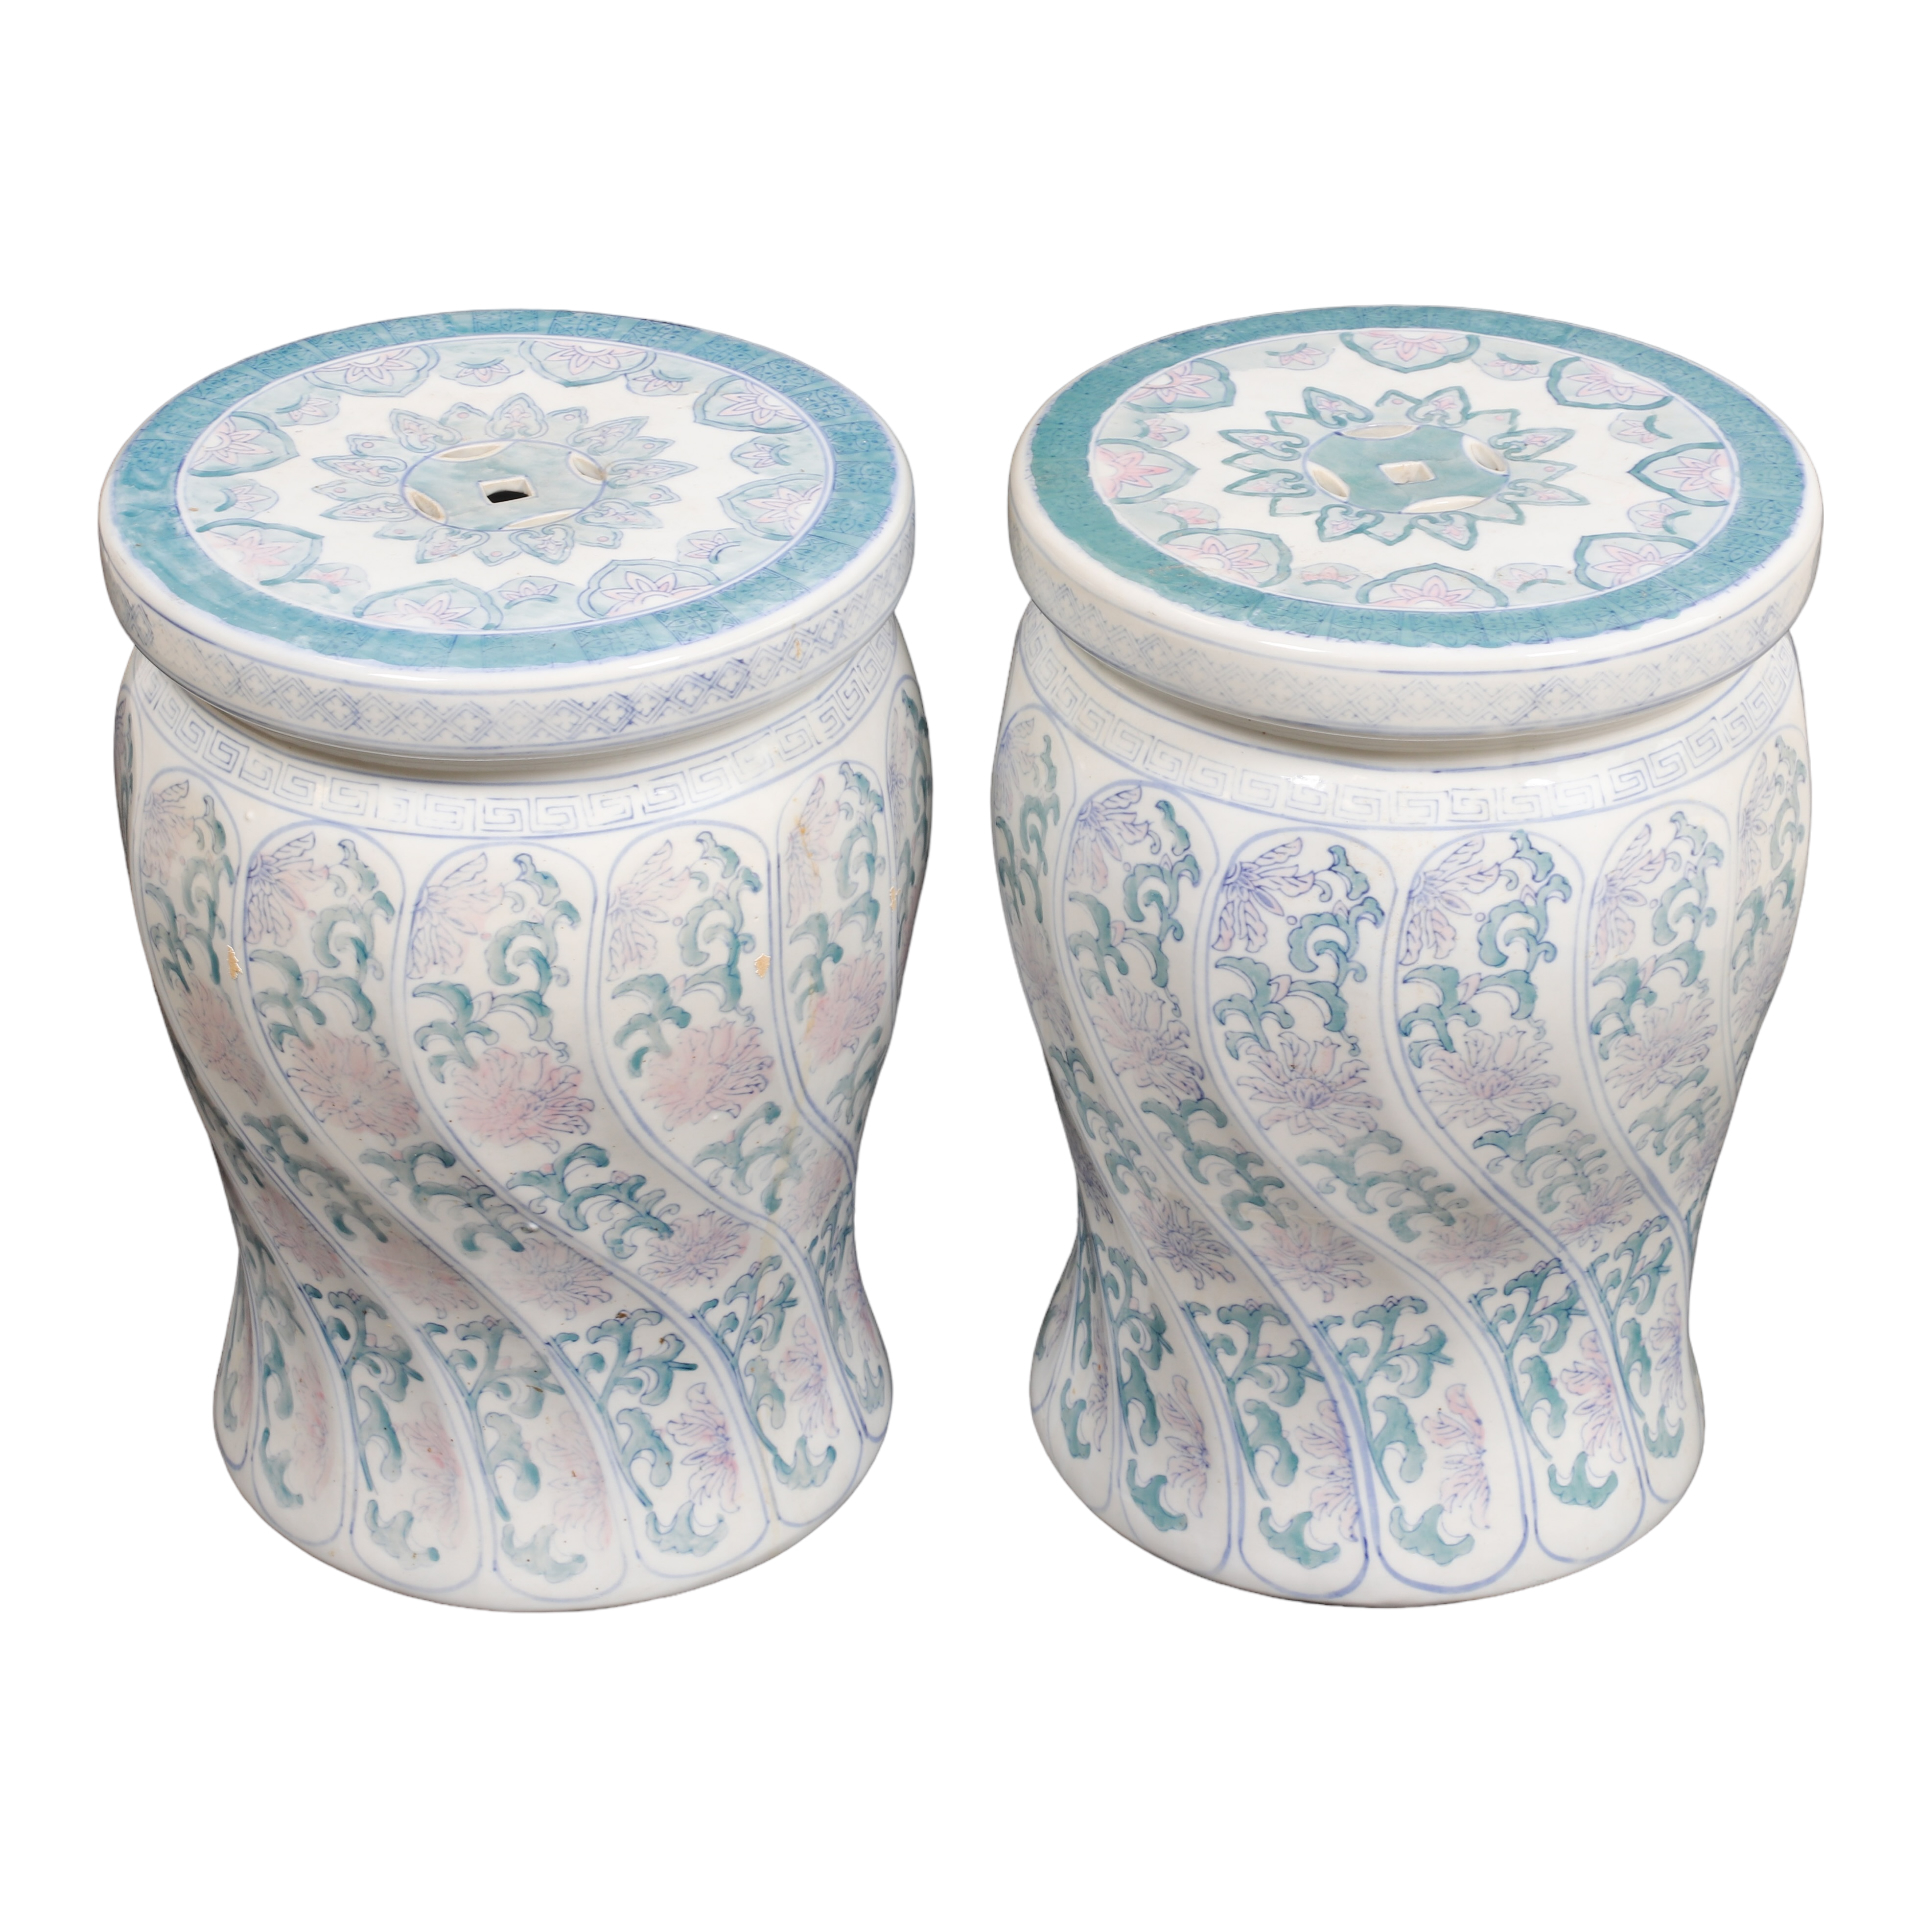 Pair Asian style pottery garden 2e218b